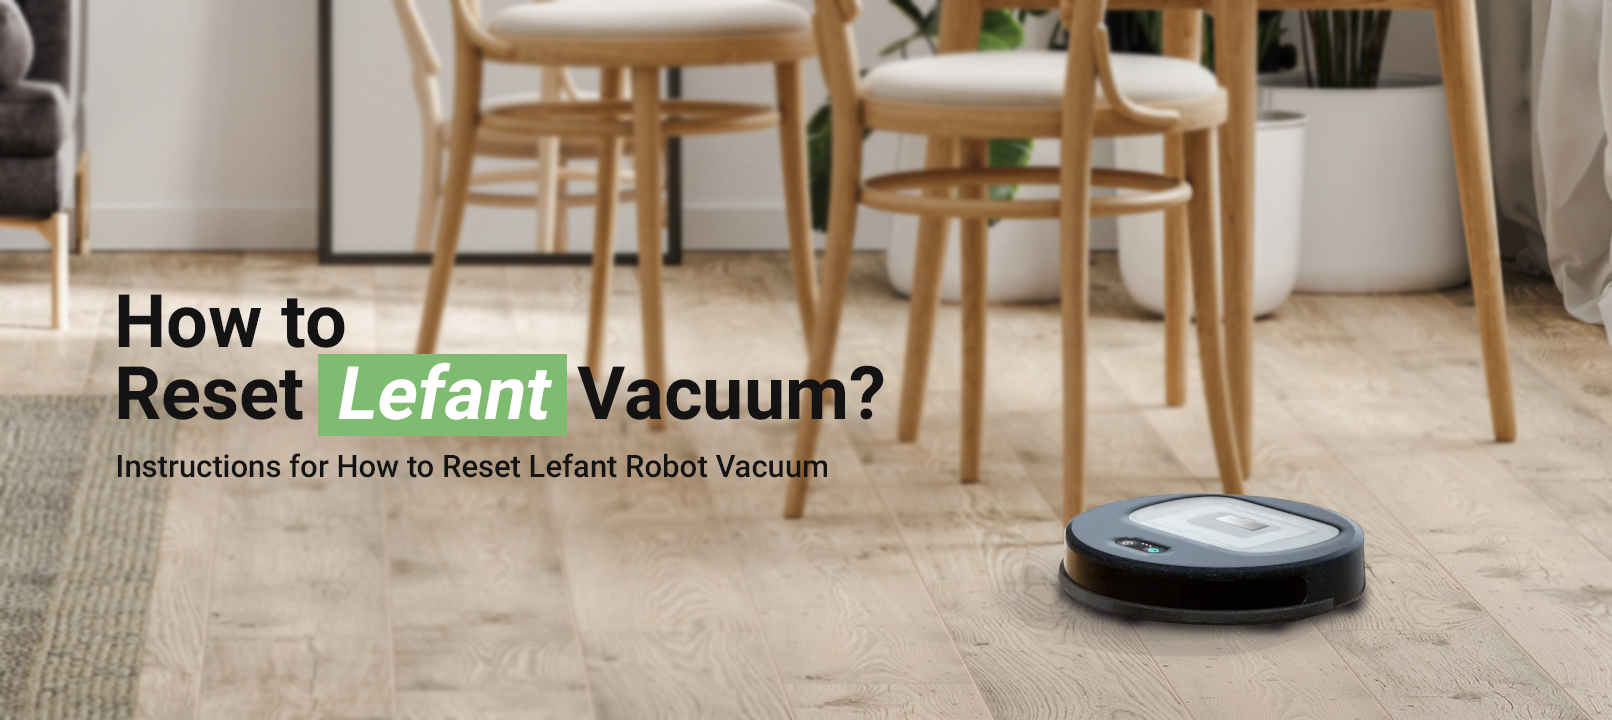 How to Reset Lefant Vacuum